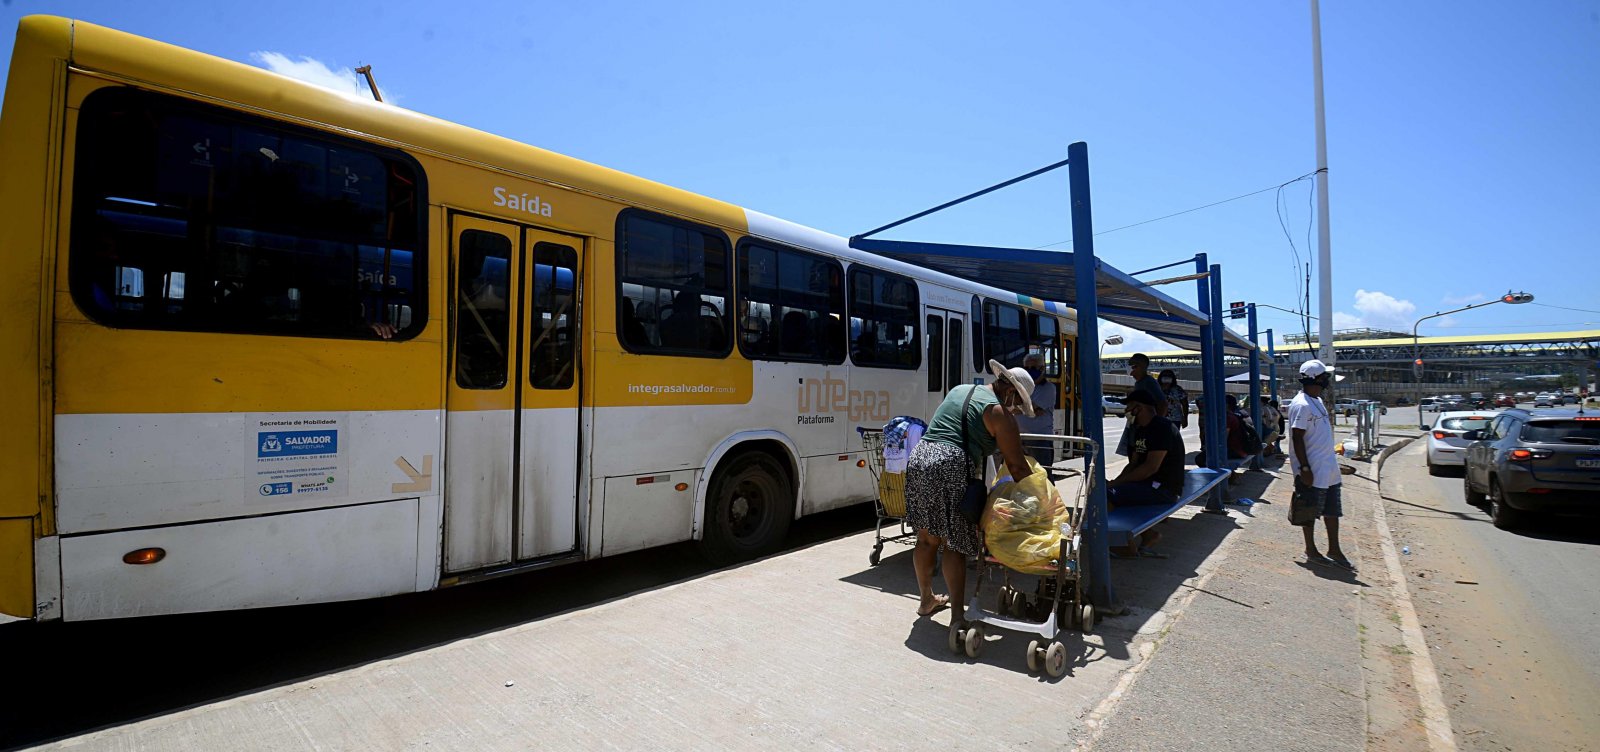 Prefeitura adota 100% da frota de ônibus em horários de pico a partir desta terça